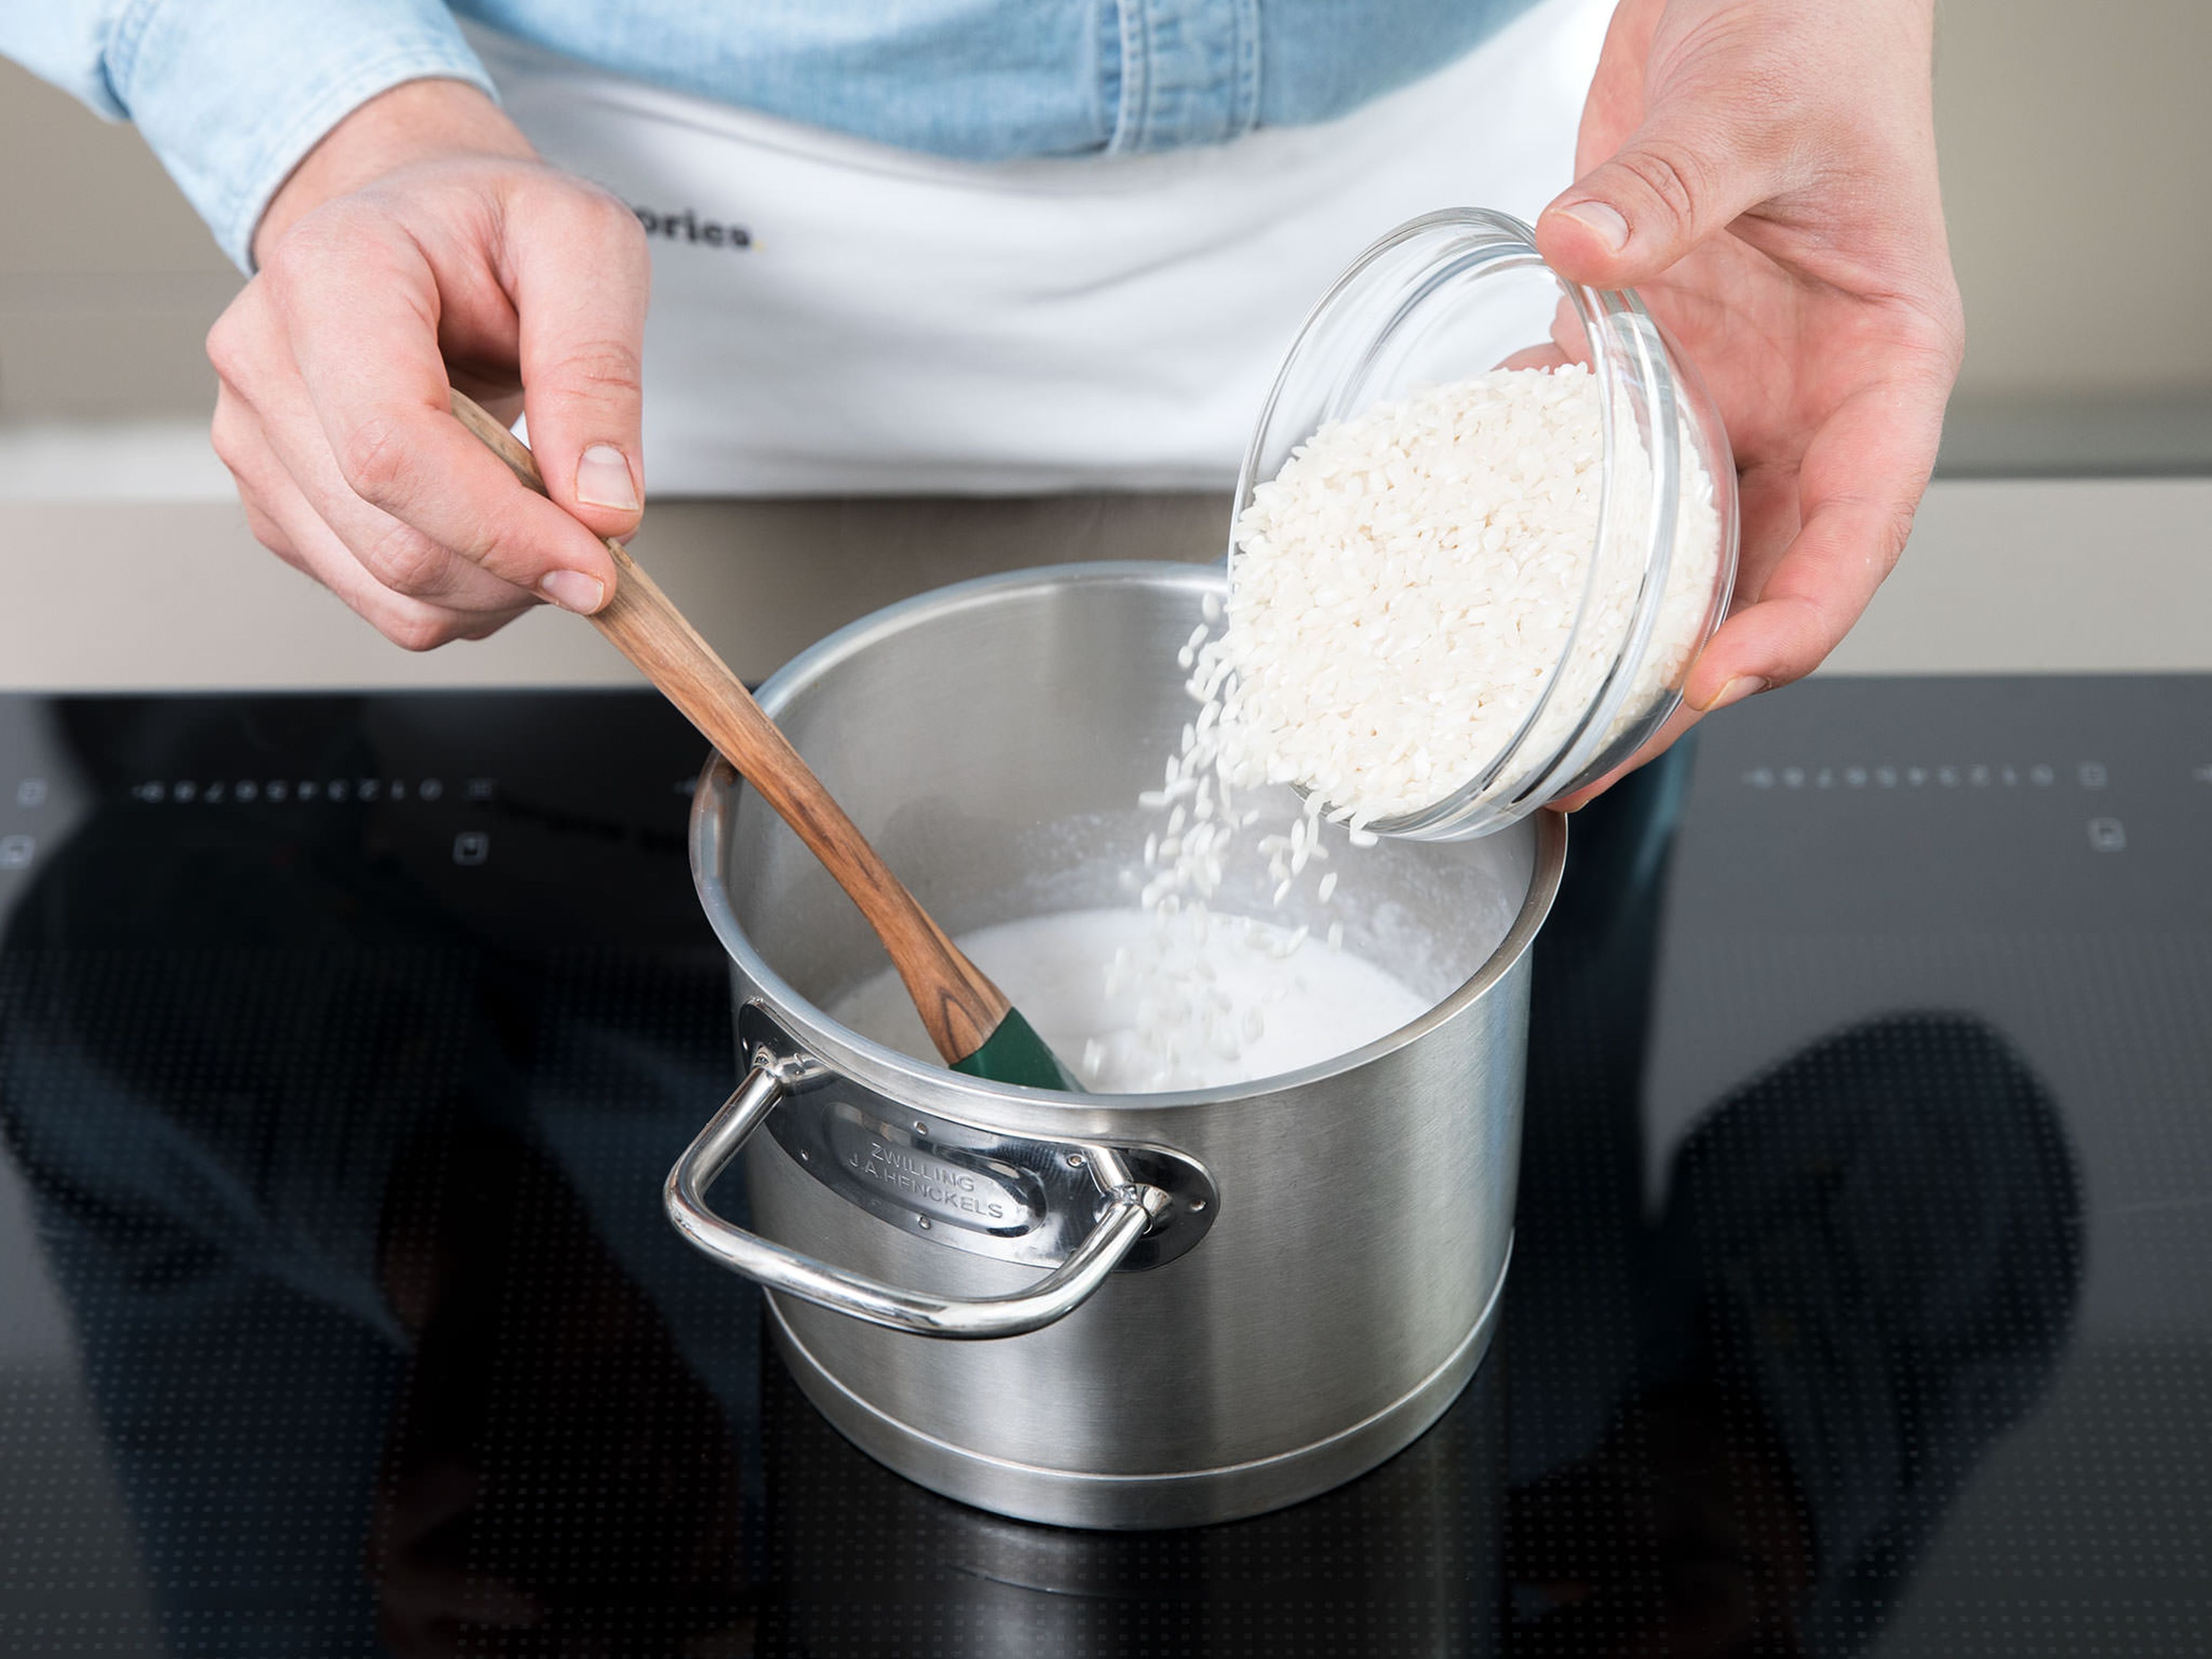 Den Reis ca. 15 Minuten lang in der Kokosmilch köcheln lassen. Dann die Milch hinzugeben und weitere 10 – 15 Min. köcheln lassen, bis der Reis eine cremige Konsistenz hat. Mehr Milch hinzugeben falls nötig. Gelegentlich rühren.